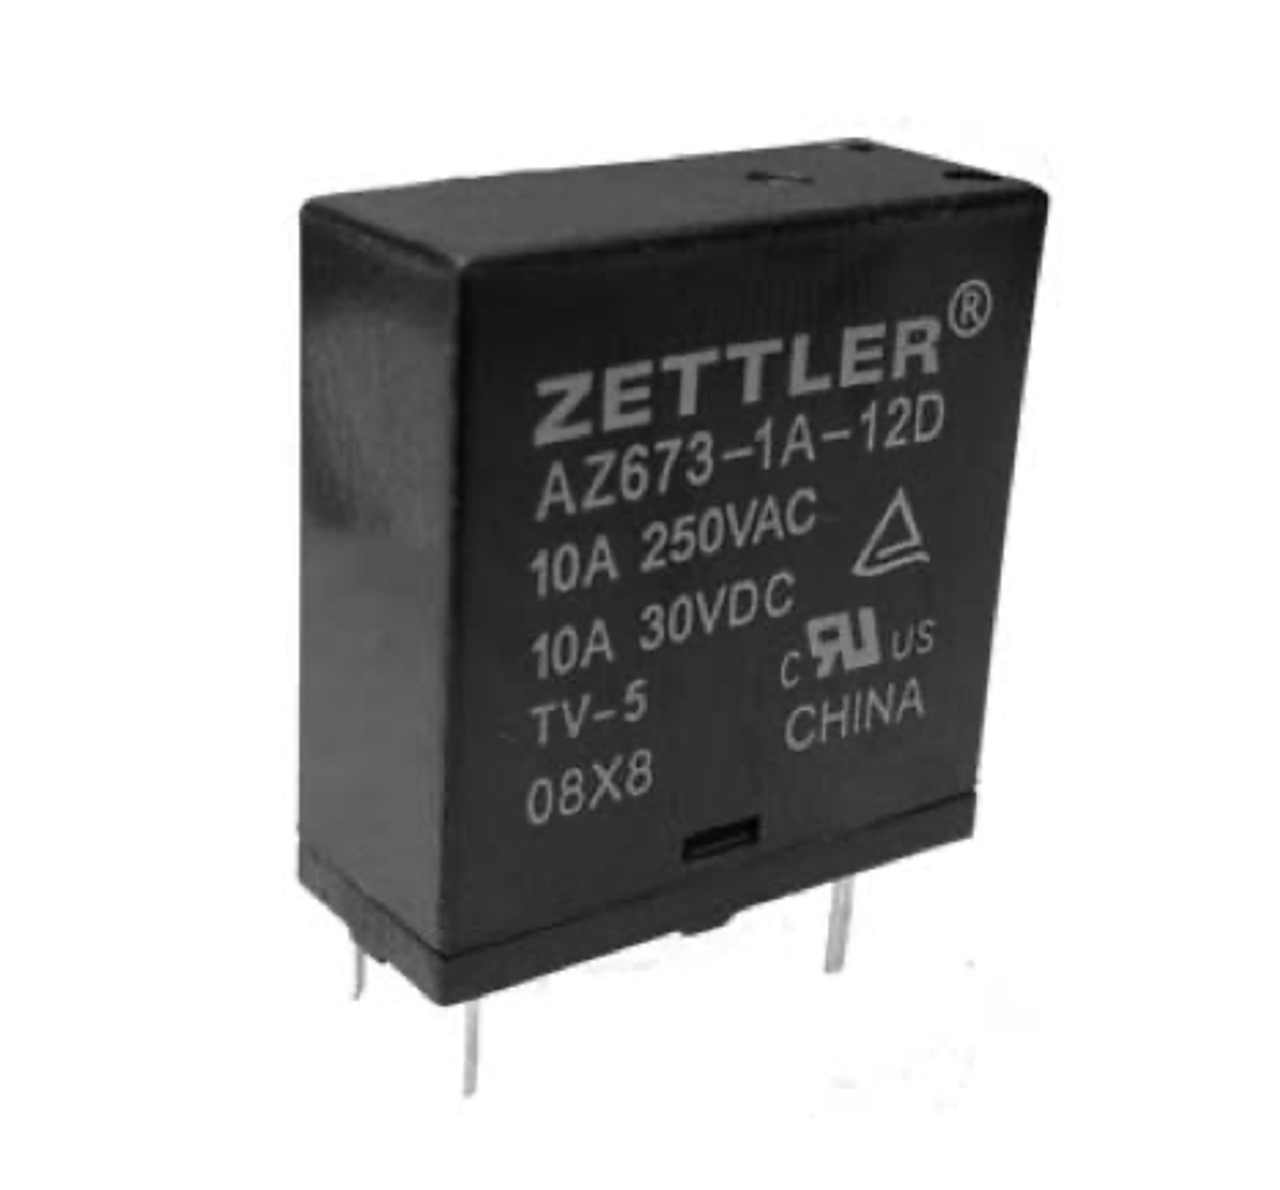 American Zettler AZ673-1A-6DS Power Relay